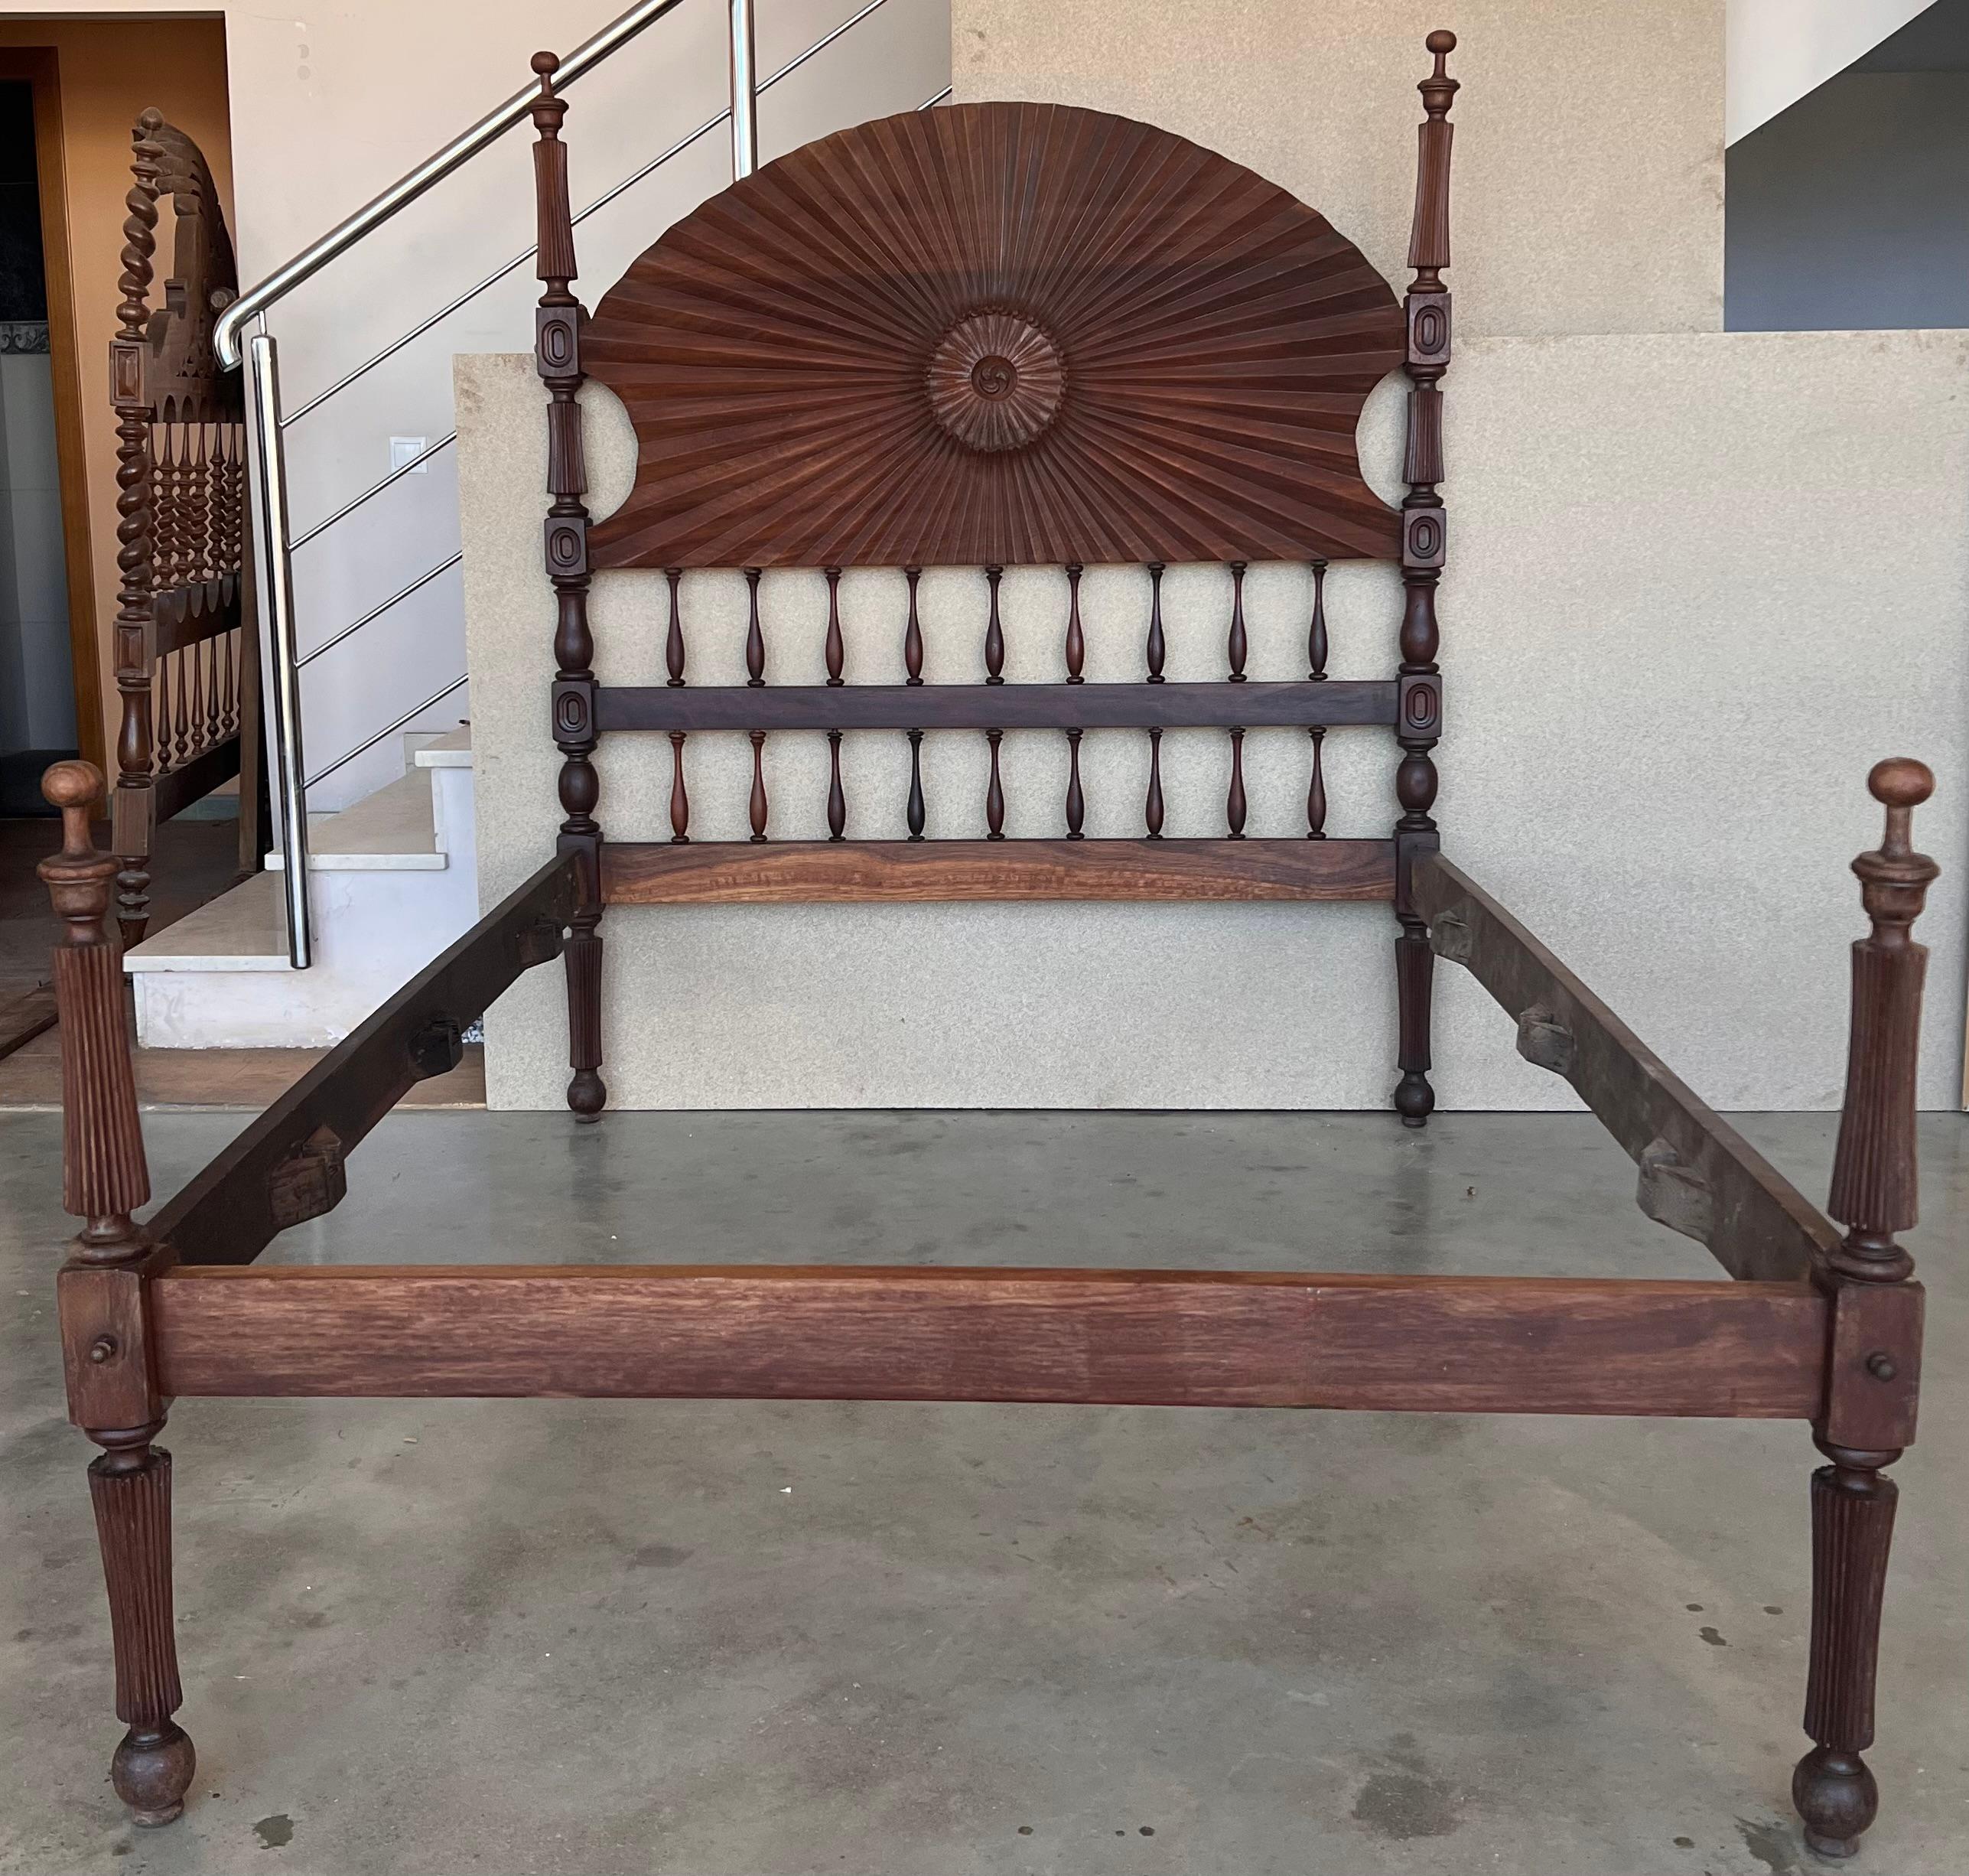 Barockes Bett aus dem 19. Jahrhundert, original spanisches Bett.

Dieses Himmelbett für Damen ist handgeschnitzt und mit aufwendigen Details versehen: geriffelte, gedrechselte Pfosten, offene 3D-Spiralspindeln und maurische Details, die durch die